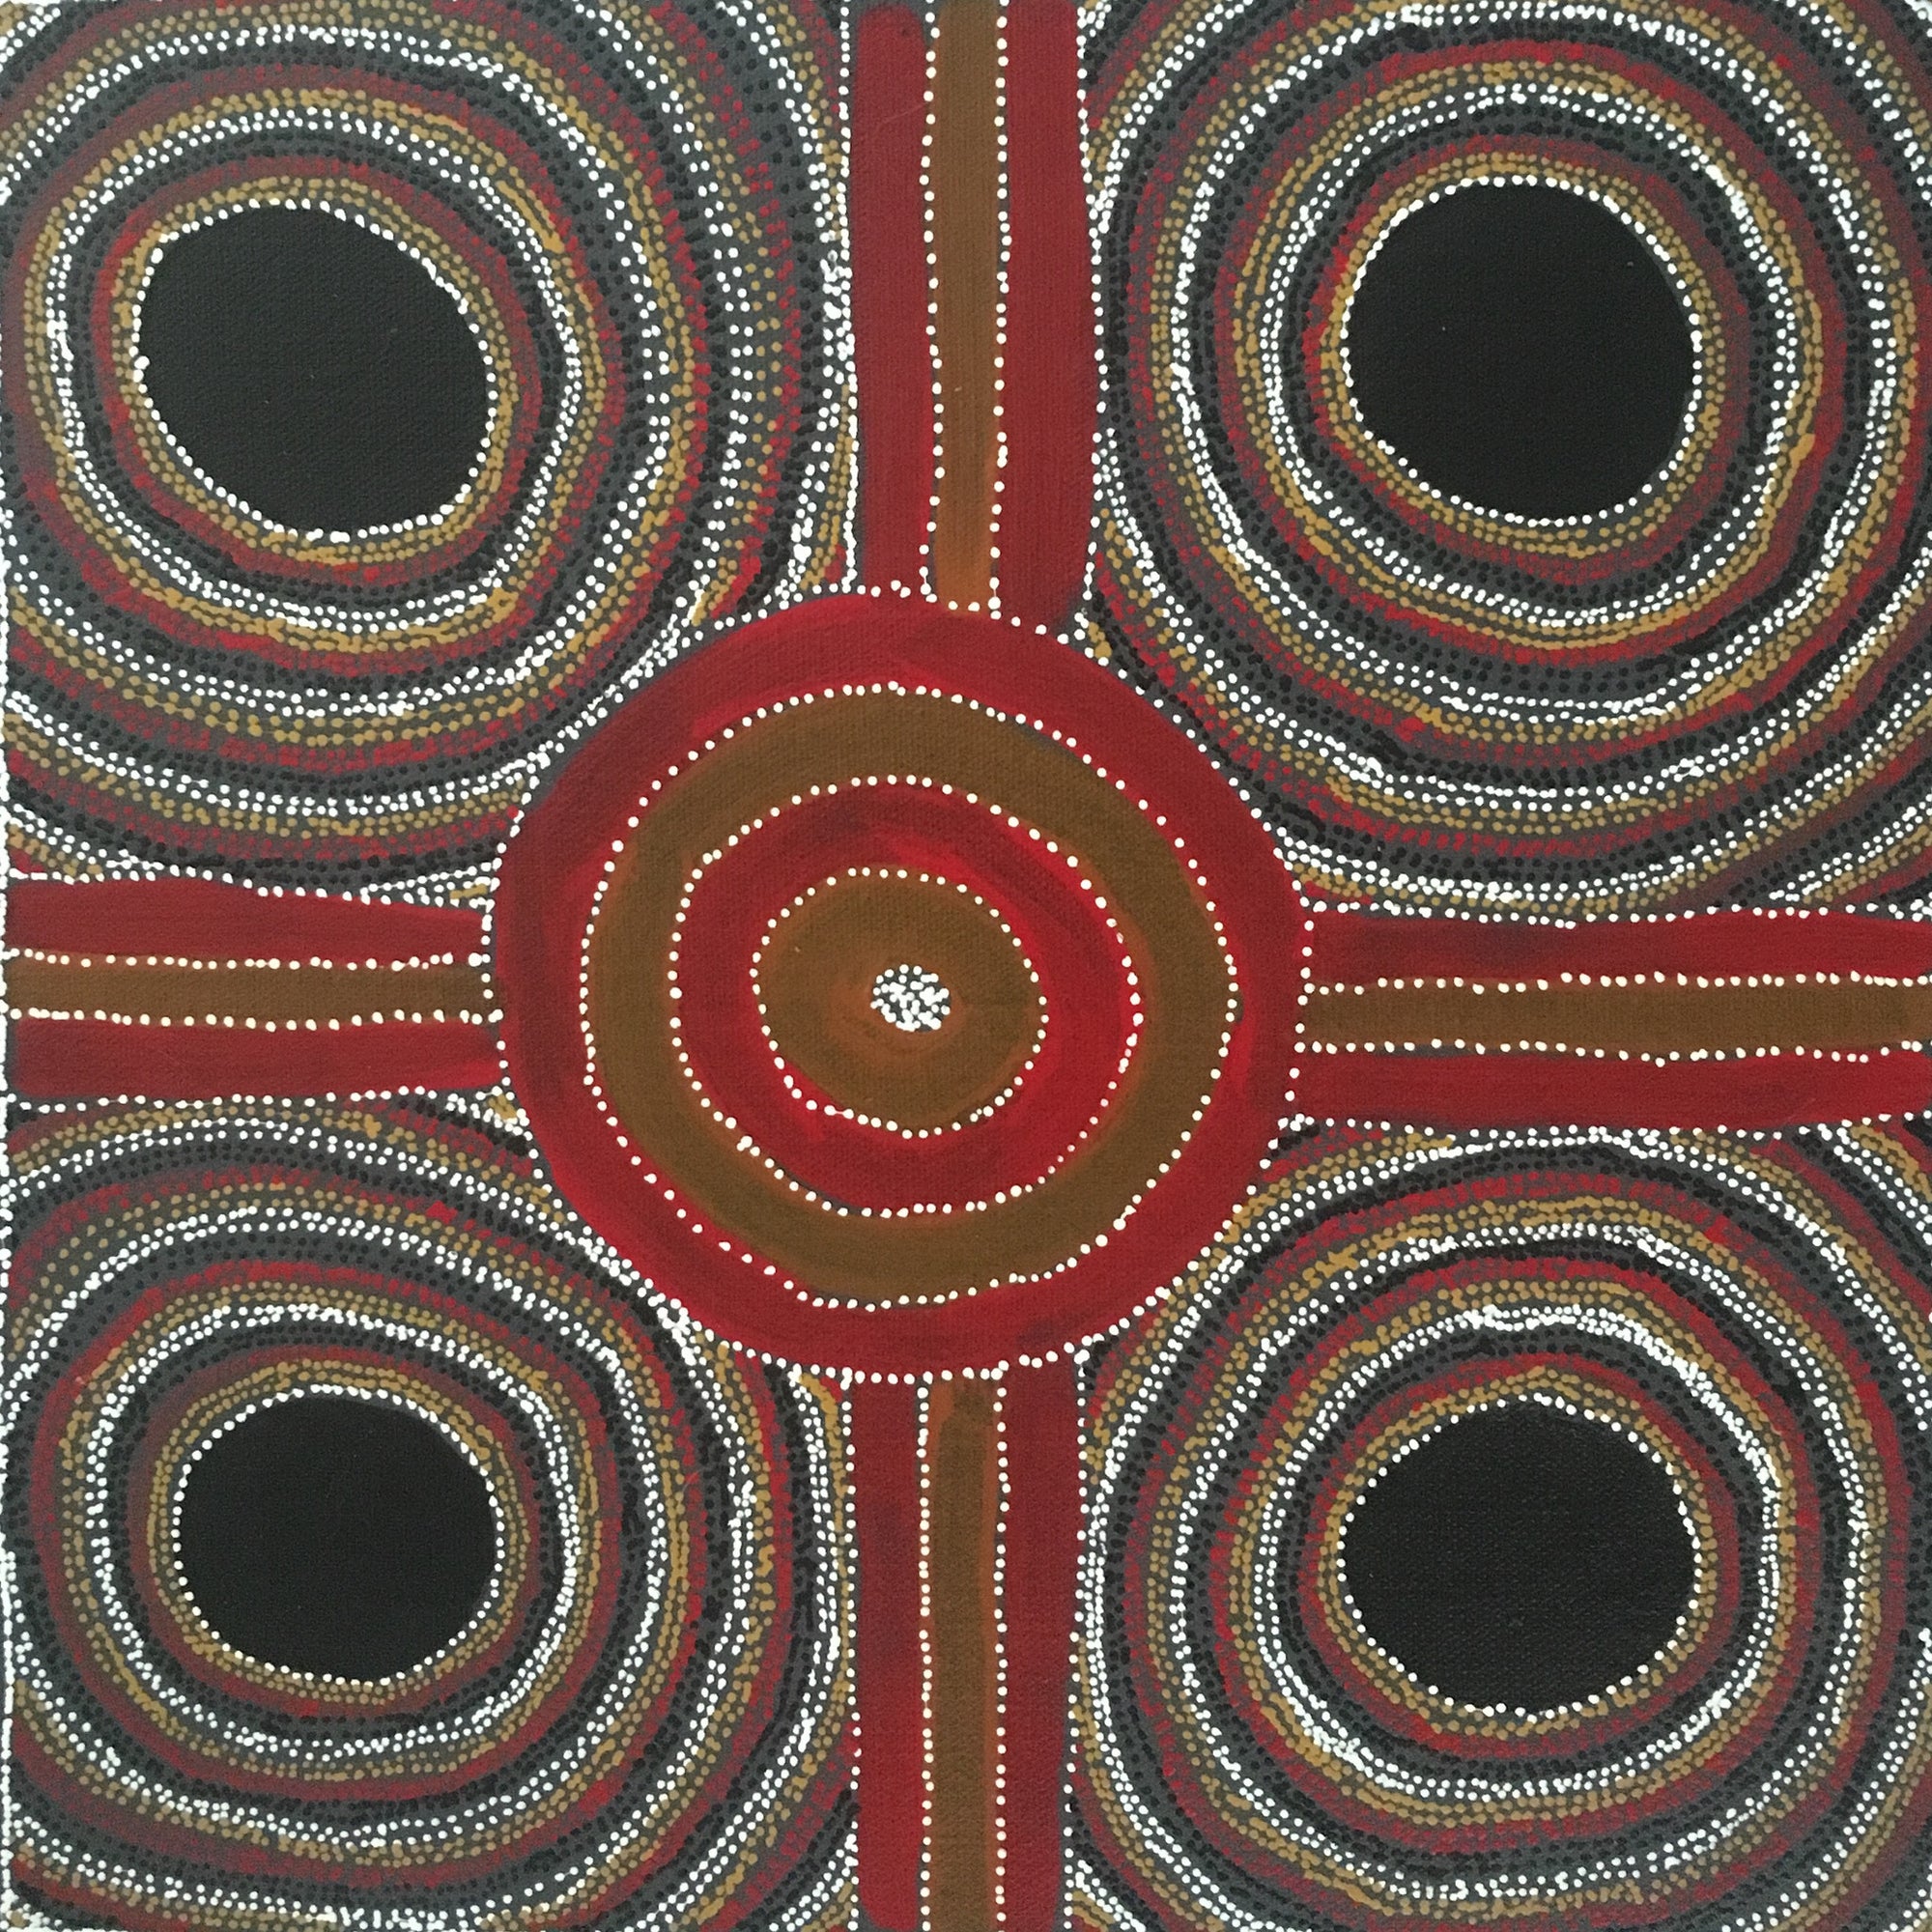 Bush Plum Dreaming by Gary Bird Mpetyane, 30cm x 30cm. Aboriginal Painting. #AboriginalArt #UtopiaLane